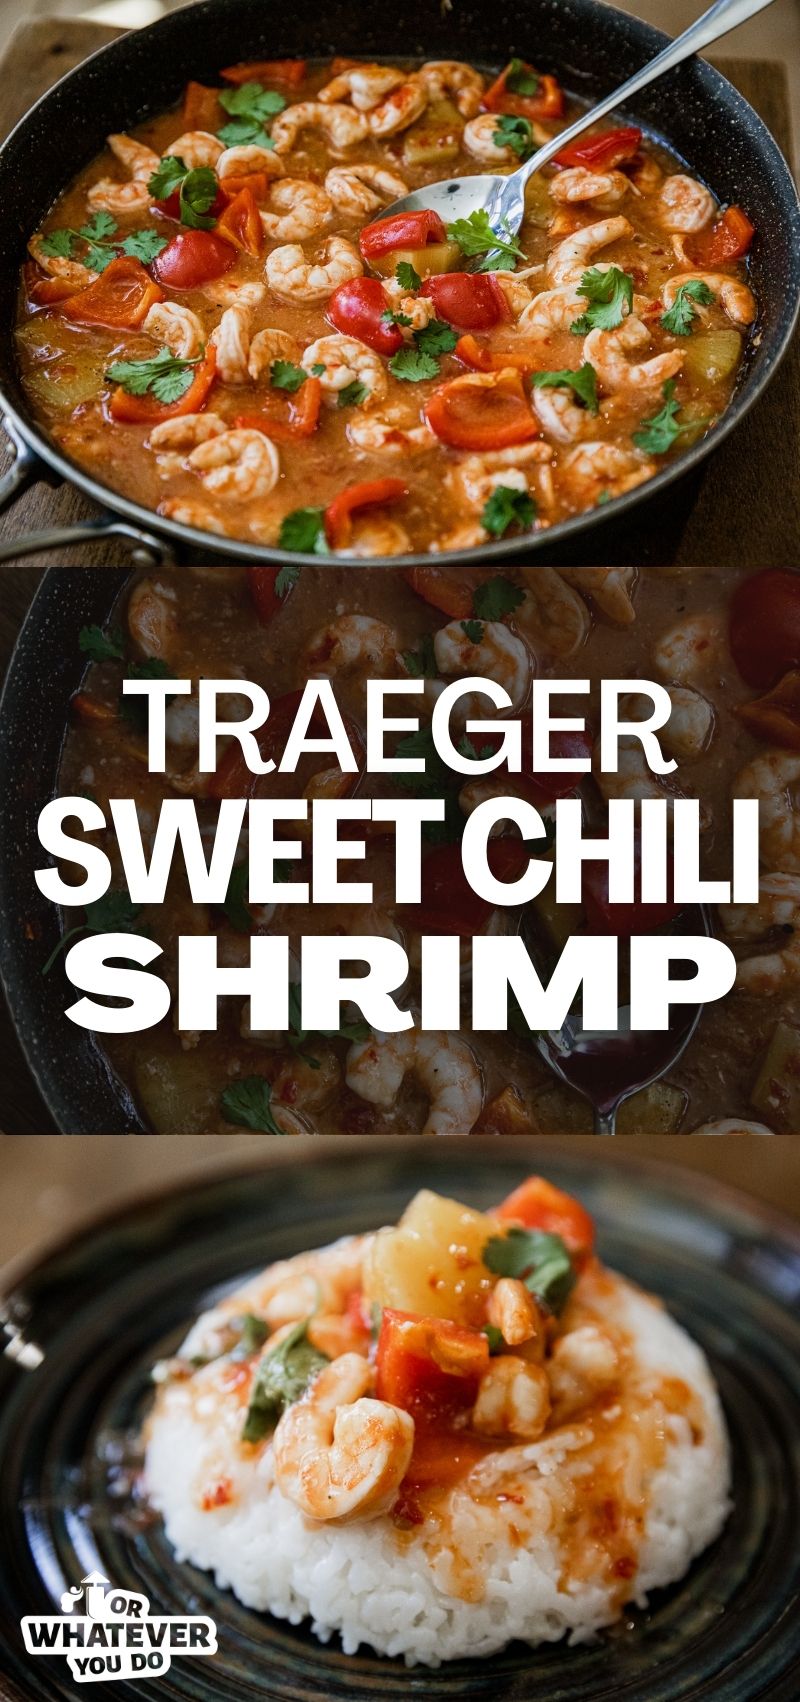 Traeger Sweet Chili Shrimp